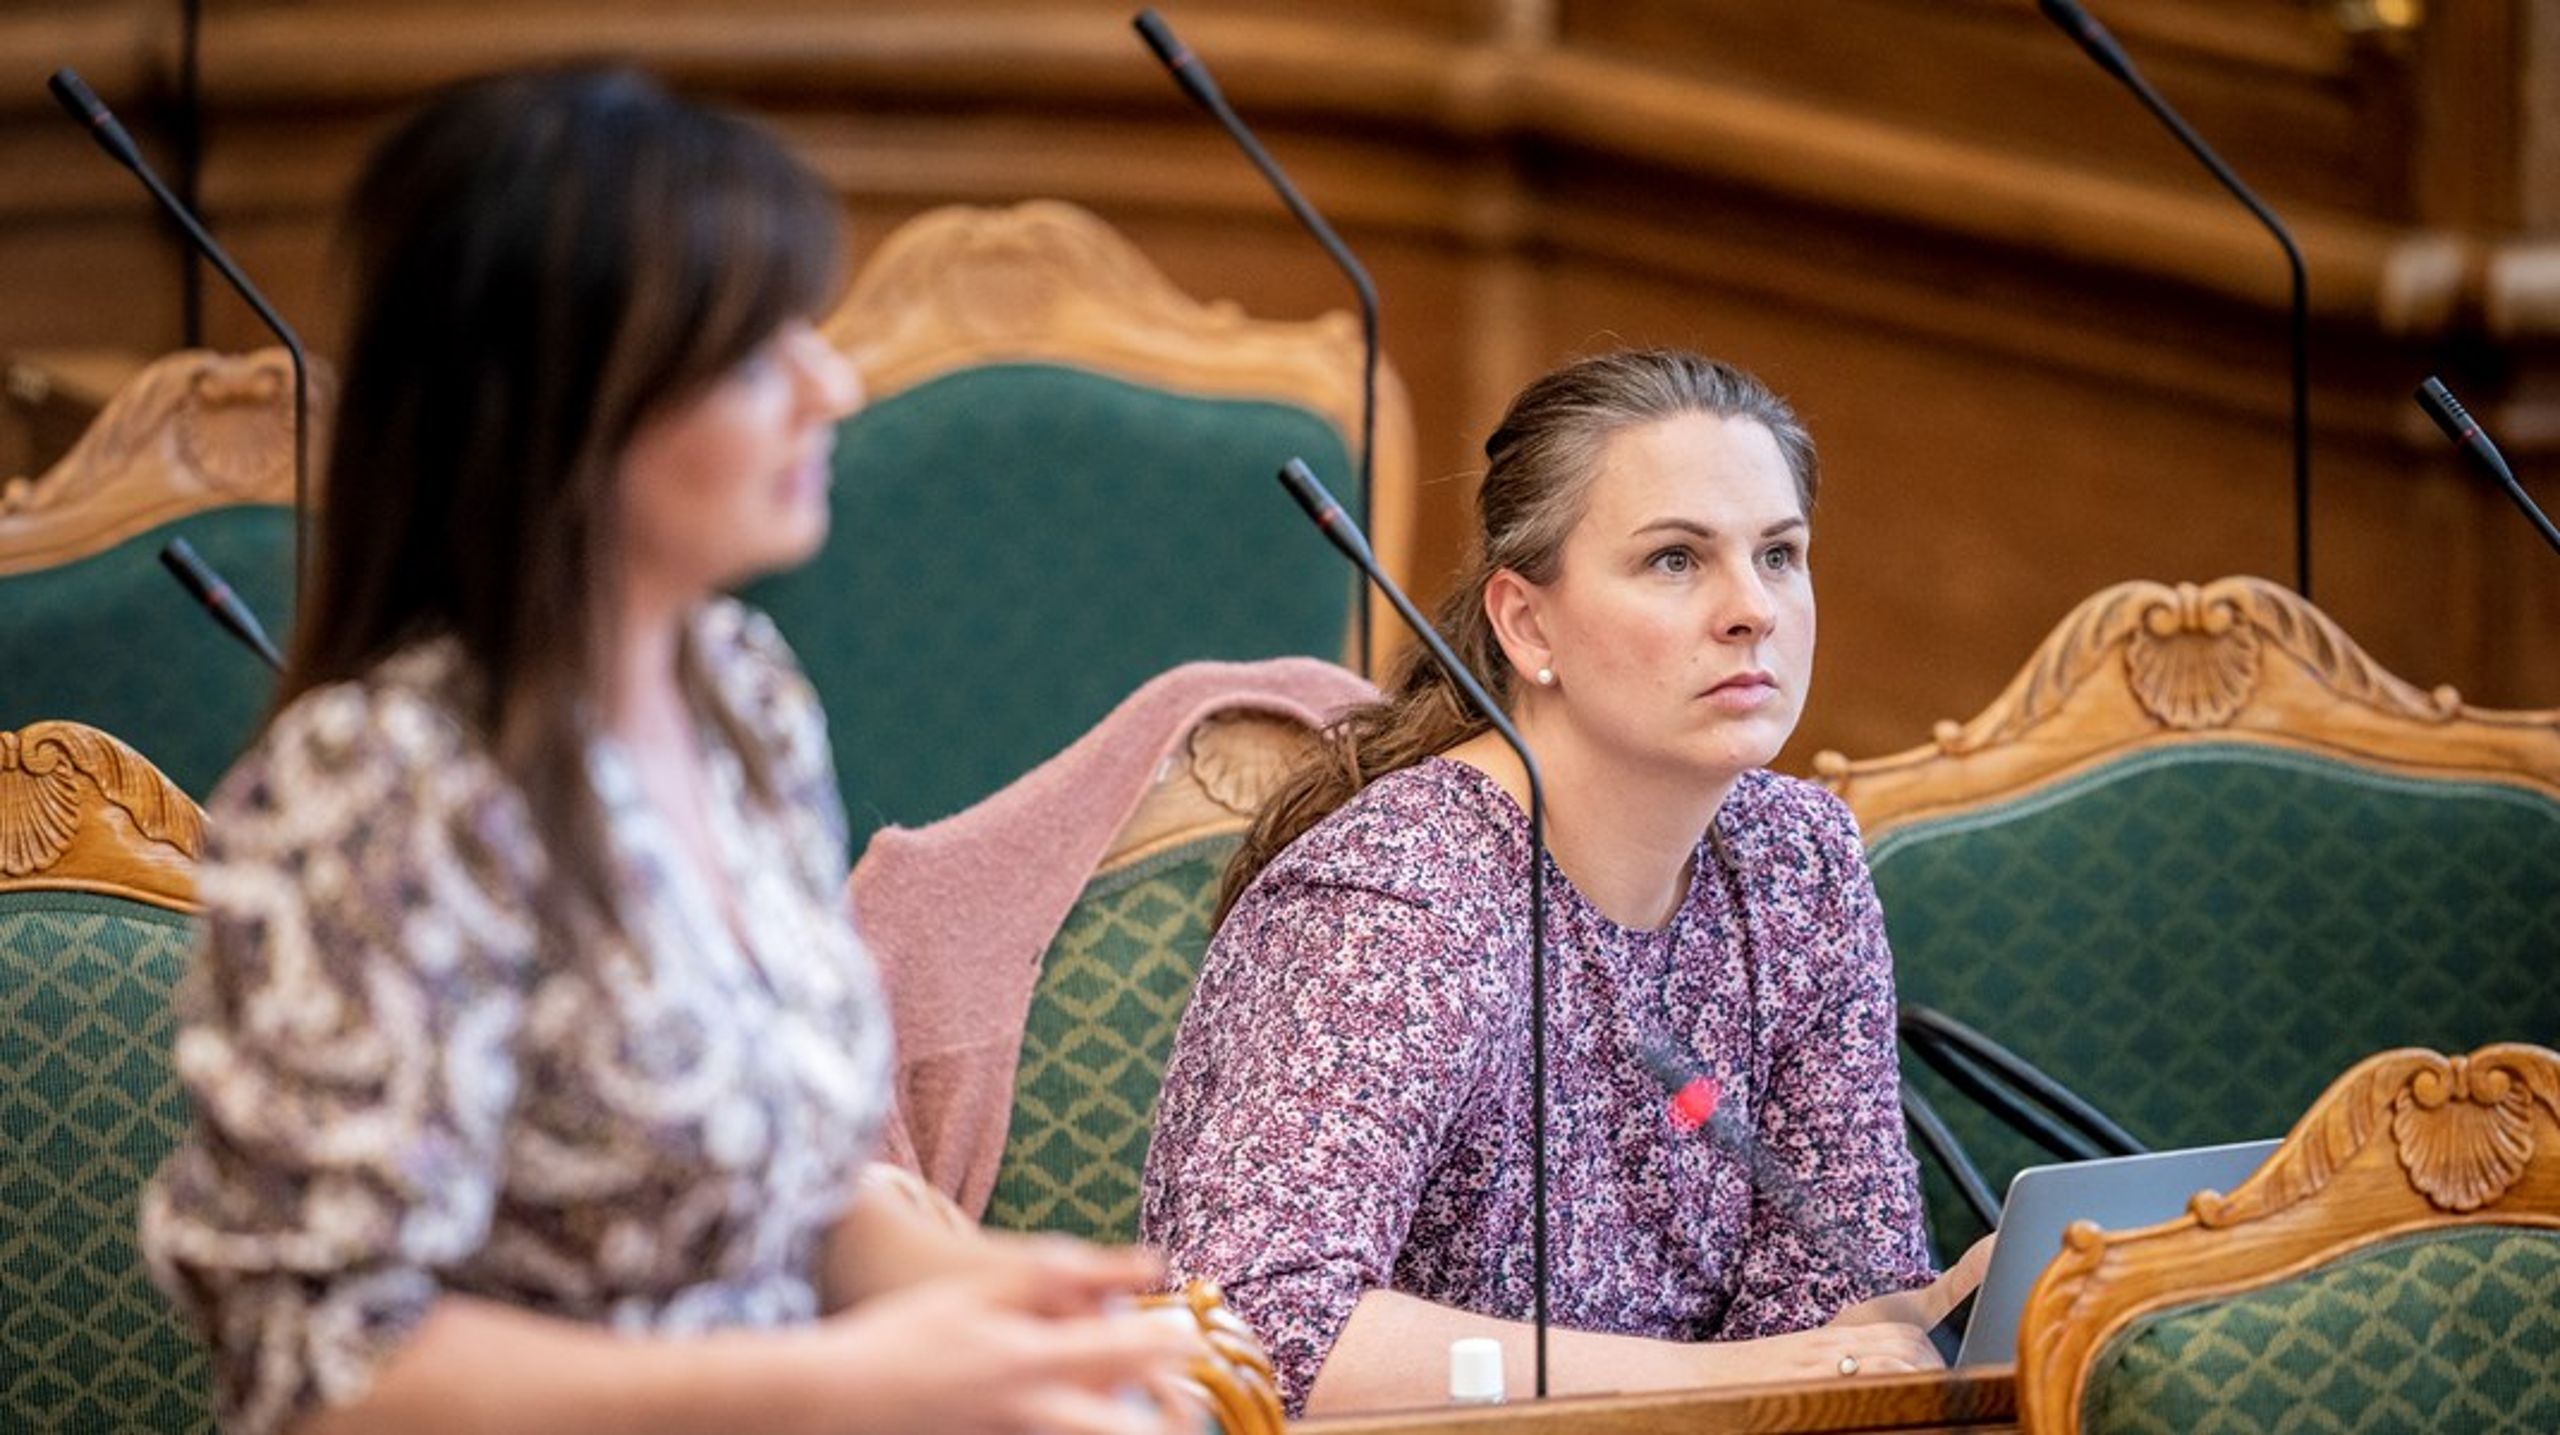 Mette Abildgaard langer ud efter Udvalget for en mere værdig død. Sundhedsminister Sophie Løhde har ingen kommentarer.